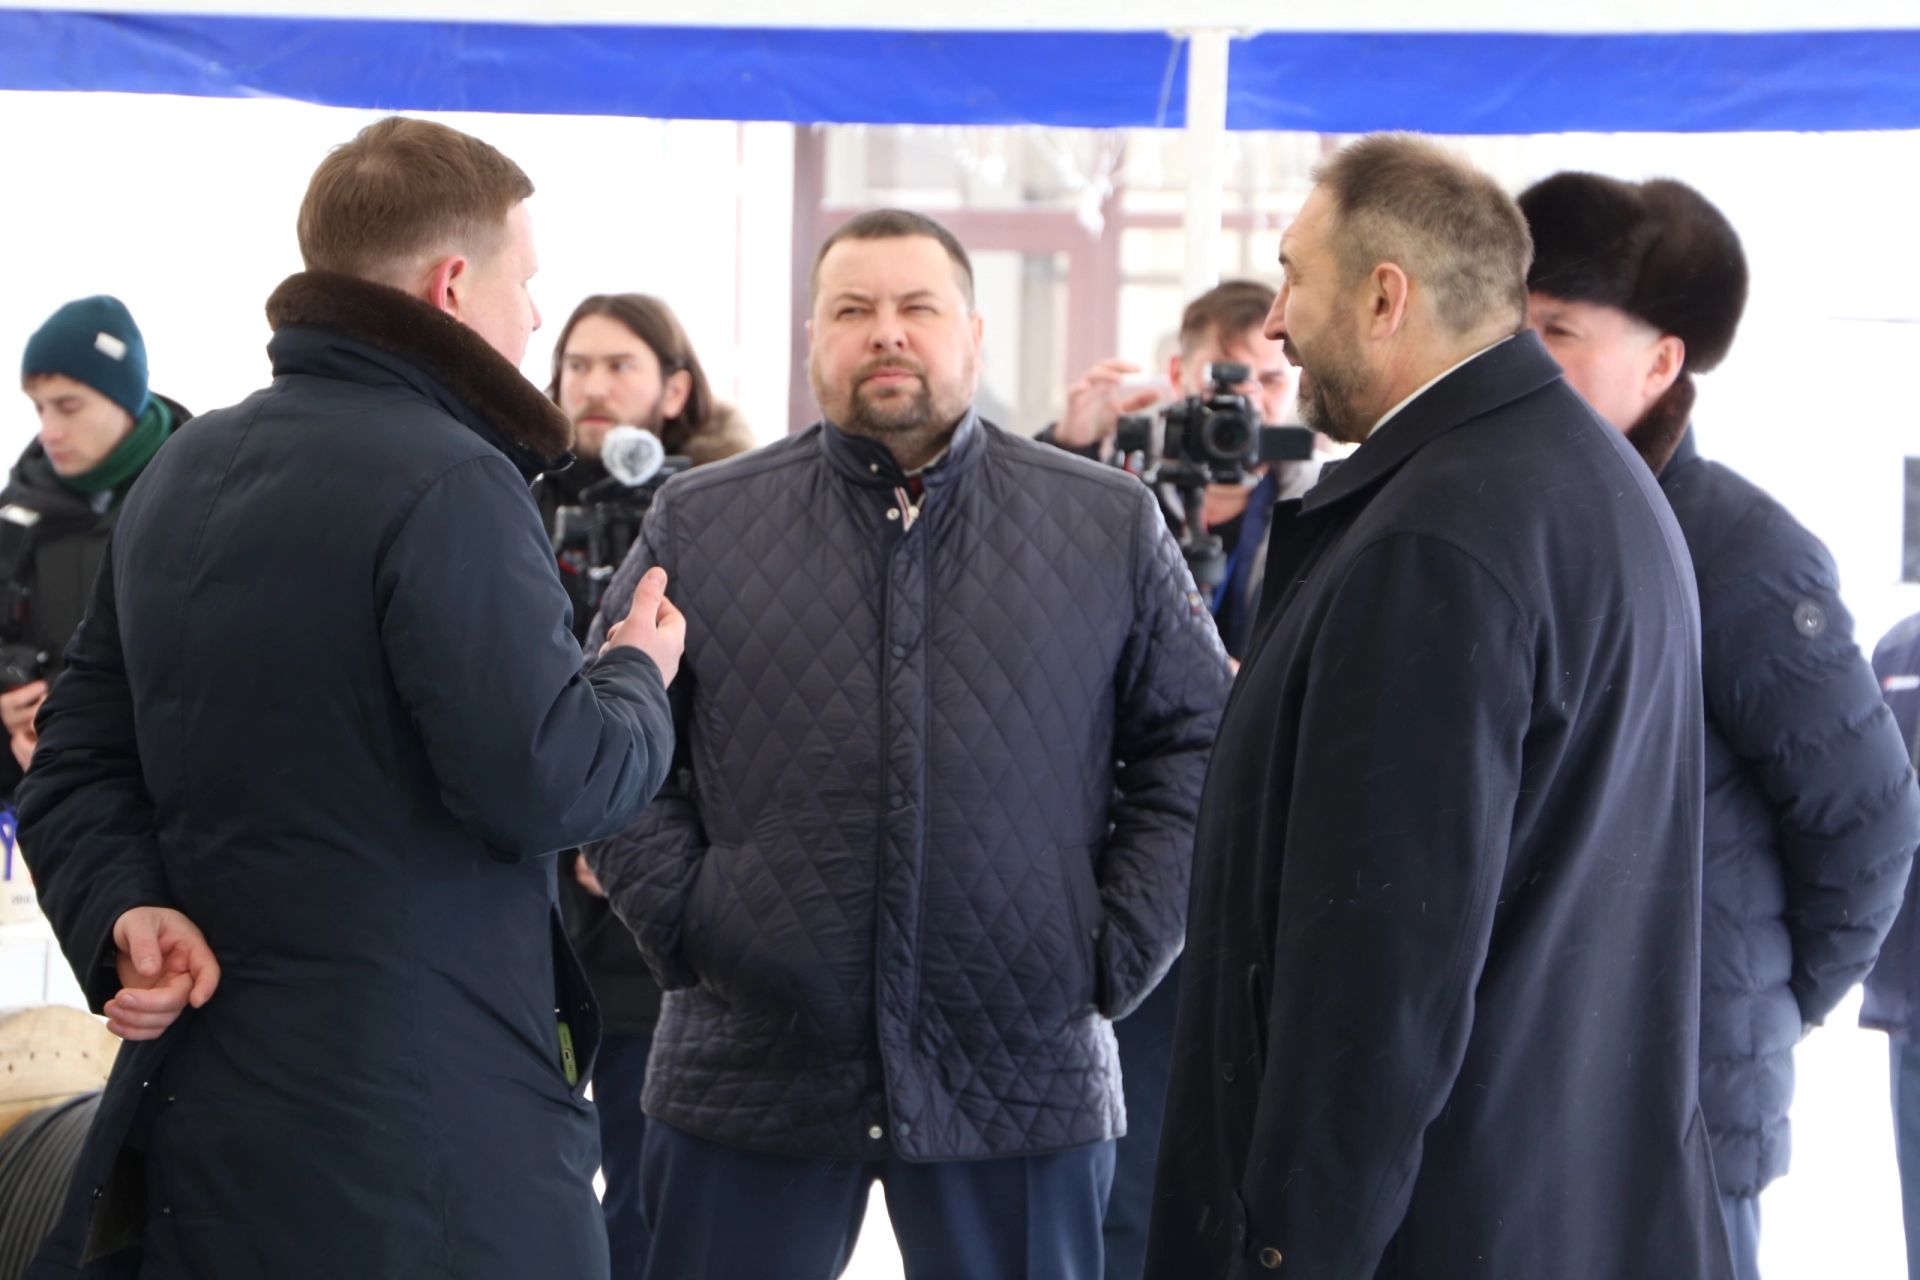 Алексей Песошин ознакомился с выставкой продукции производителей Алексеевского района